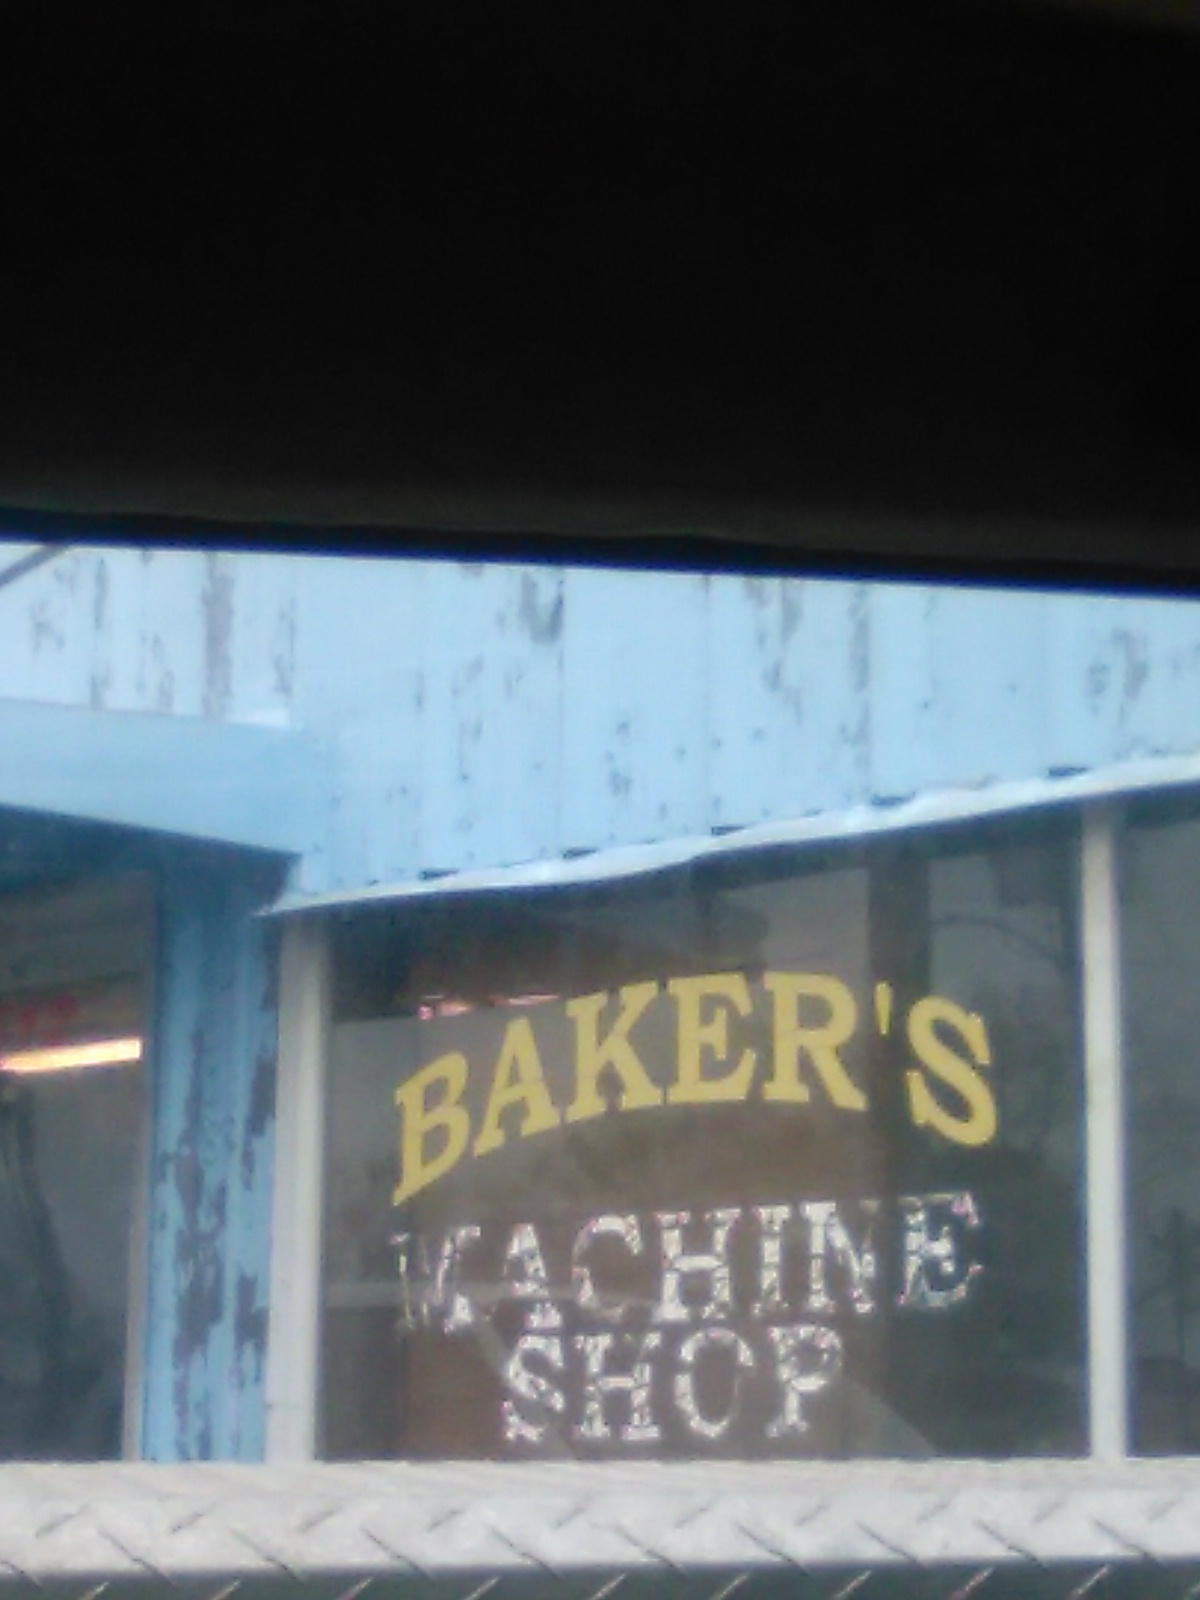 Baker's Automotive Machine Shp